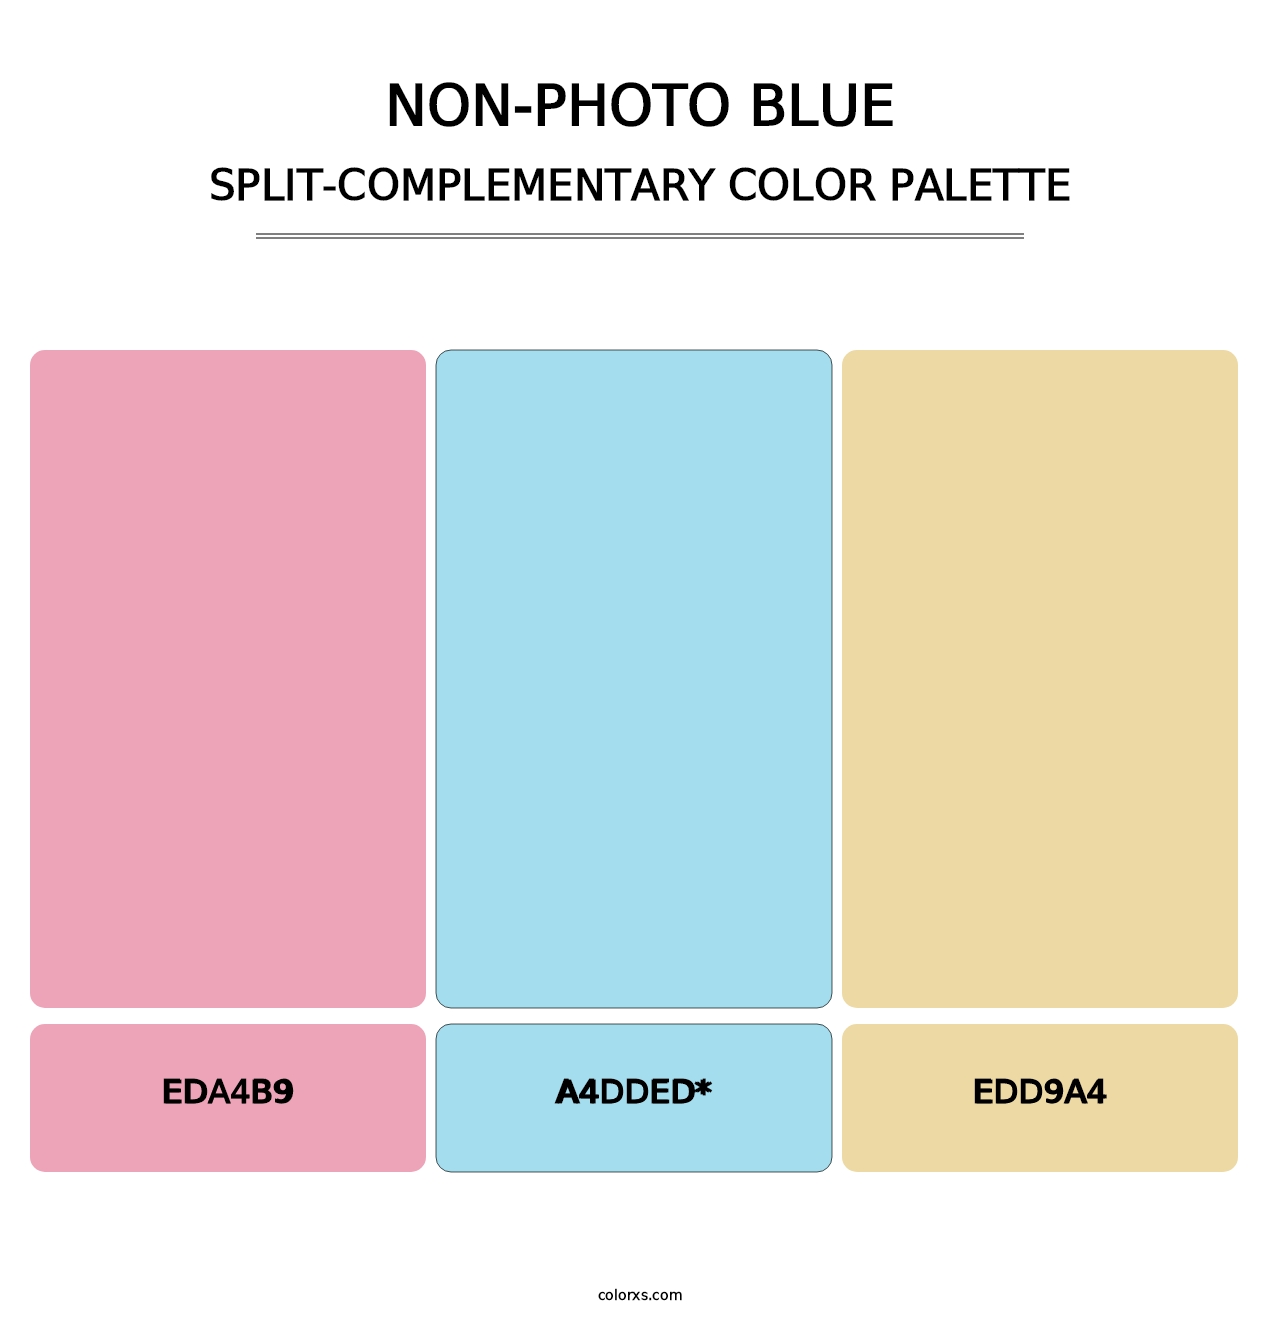 Non-photo Blue - Split-Complementary Color Palette